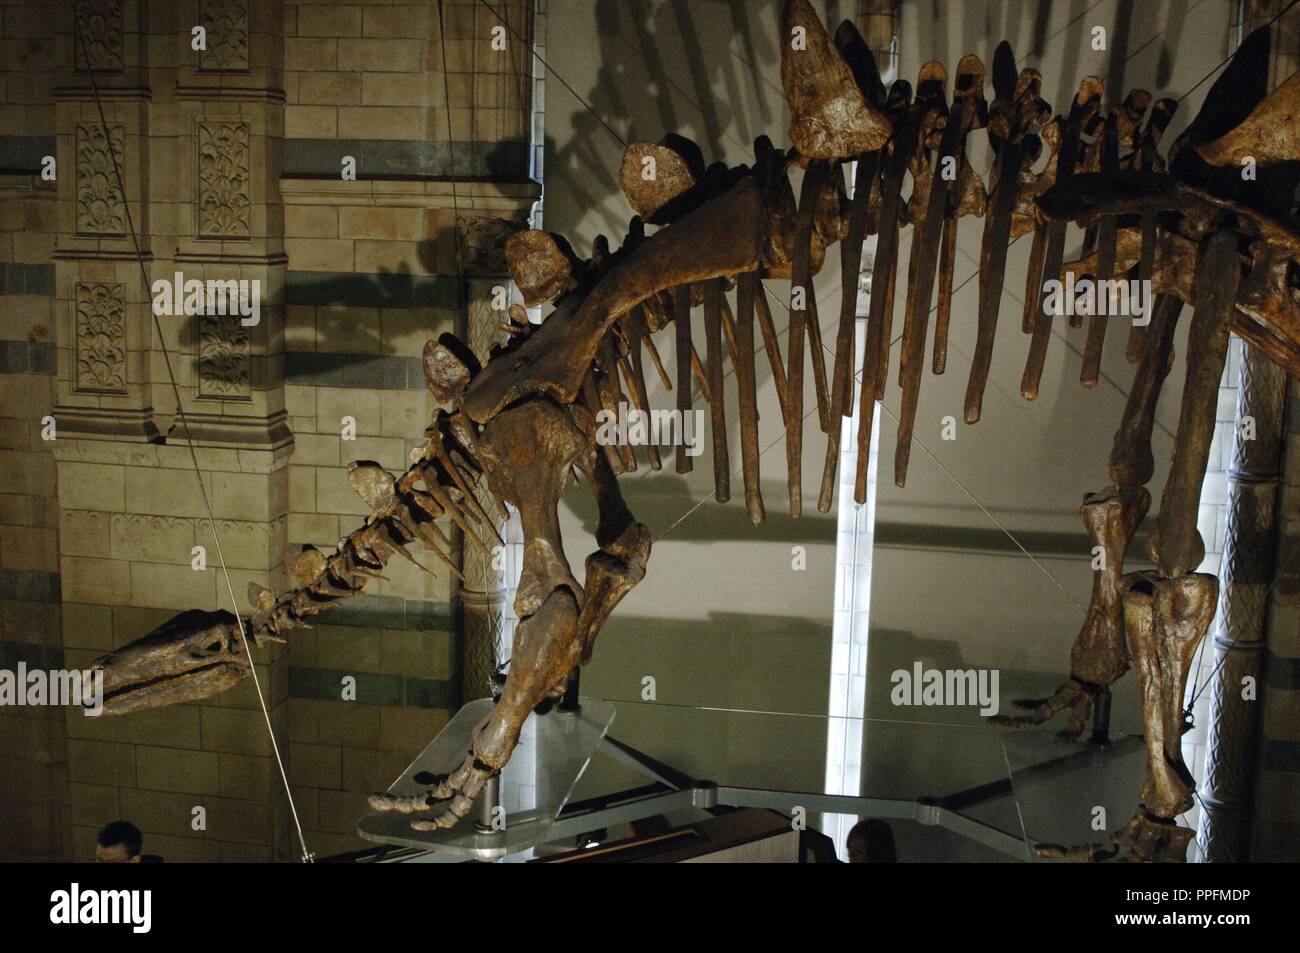 Tuojiangosaurus multispinus scheletro. Tardo Giurassico. Oxfordian Kimmeridgian stadio. Museo di Storia Naturale. Londra. Regno Unito. Foto Stock